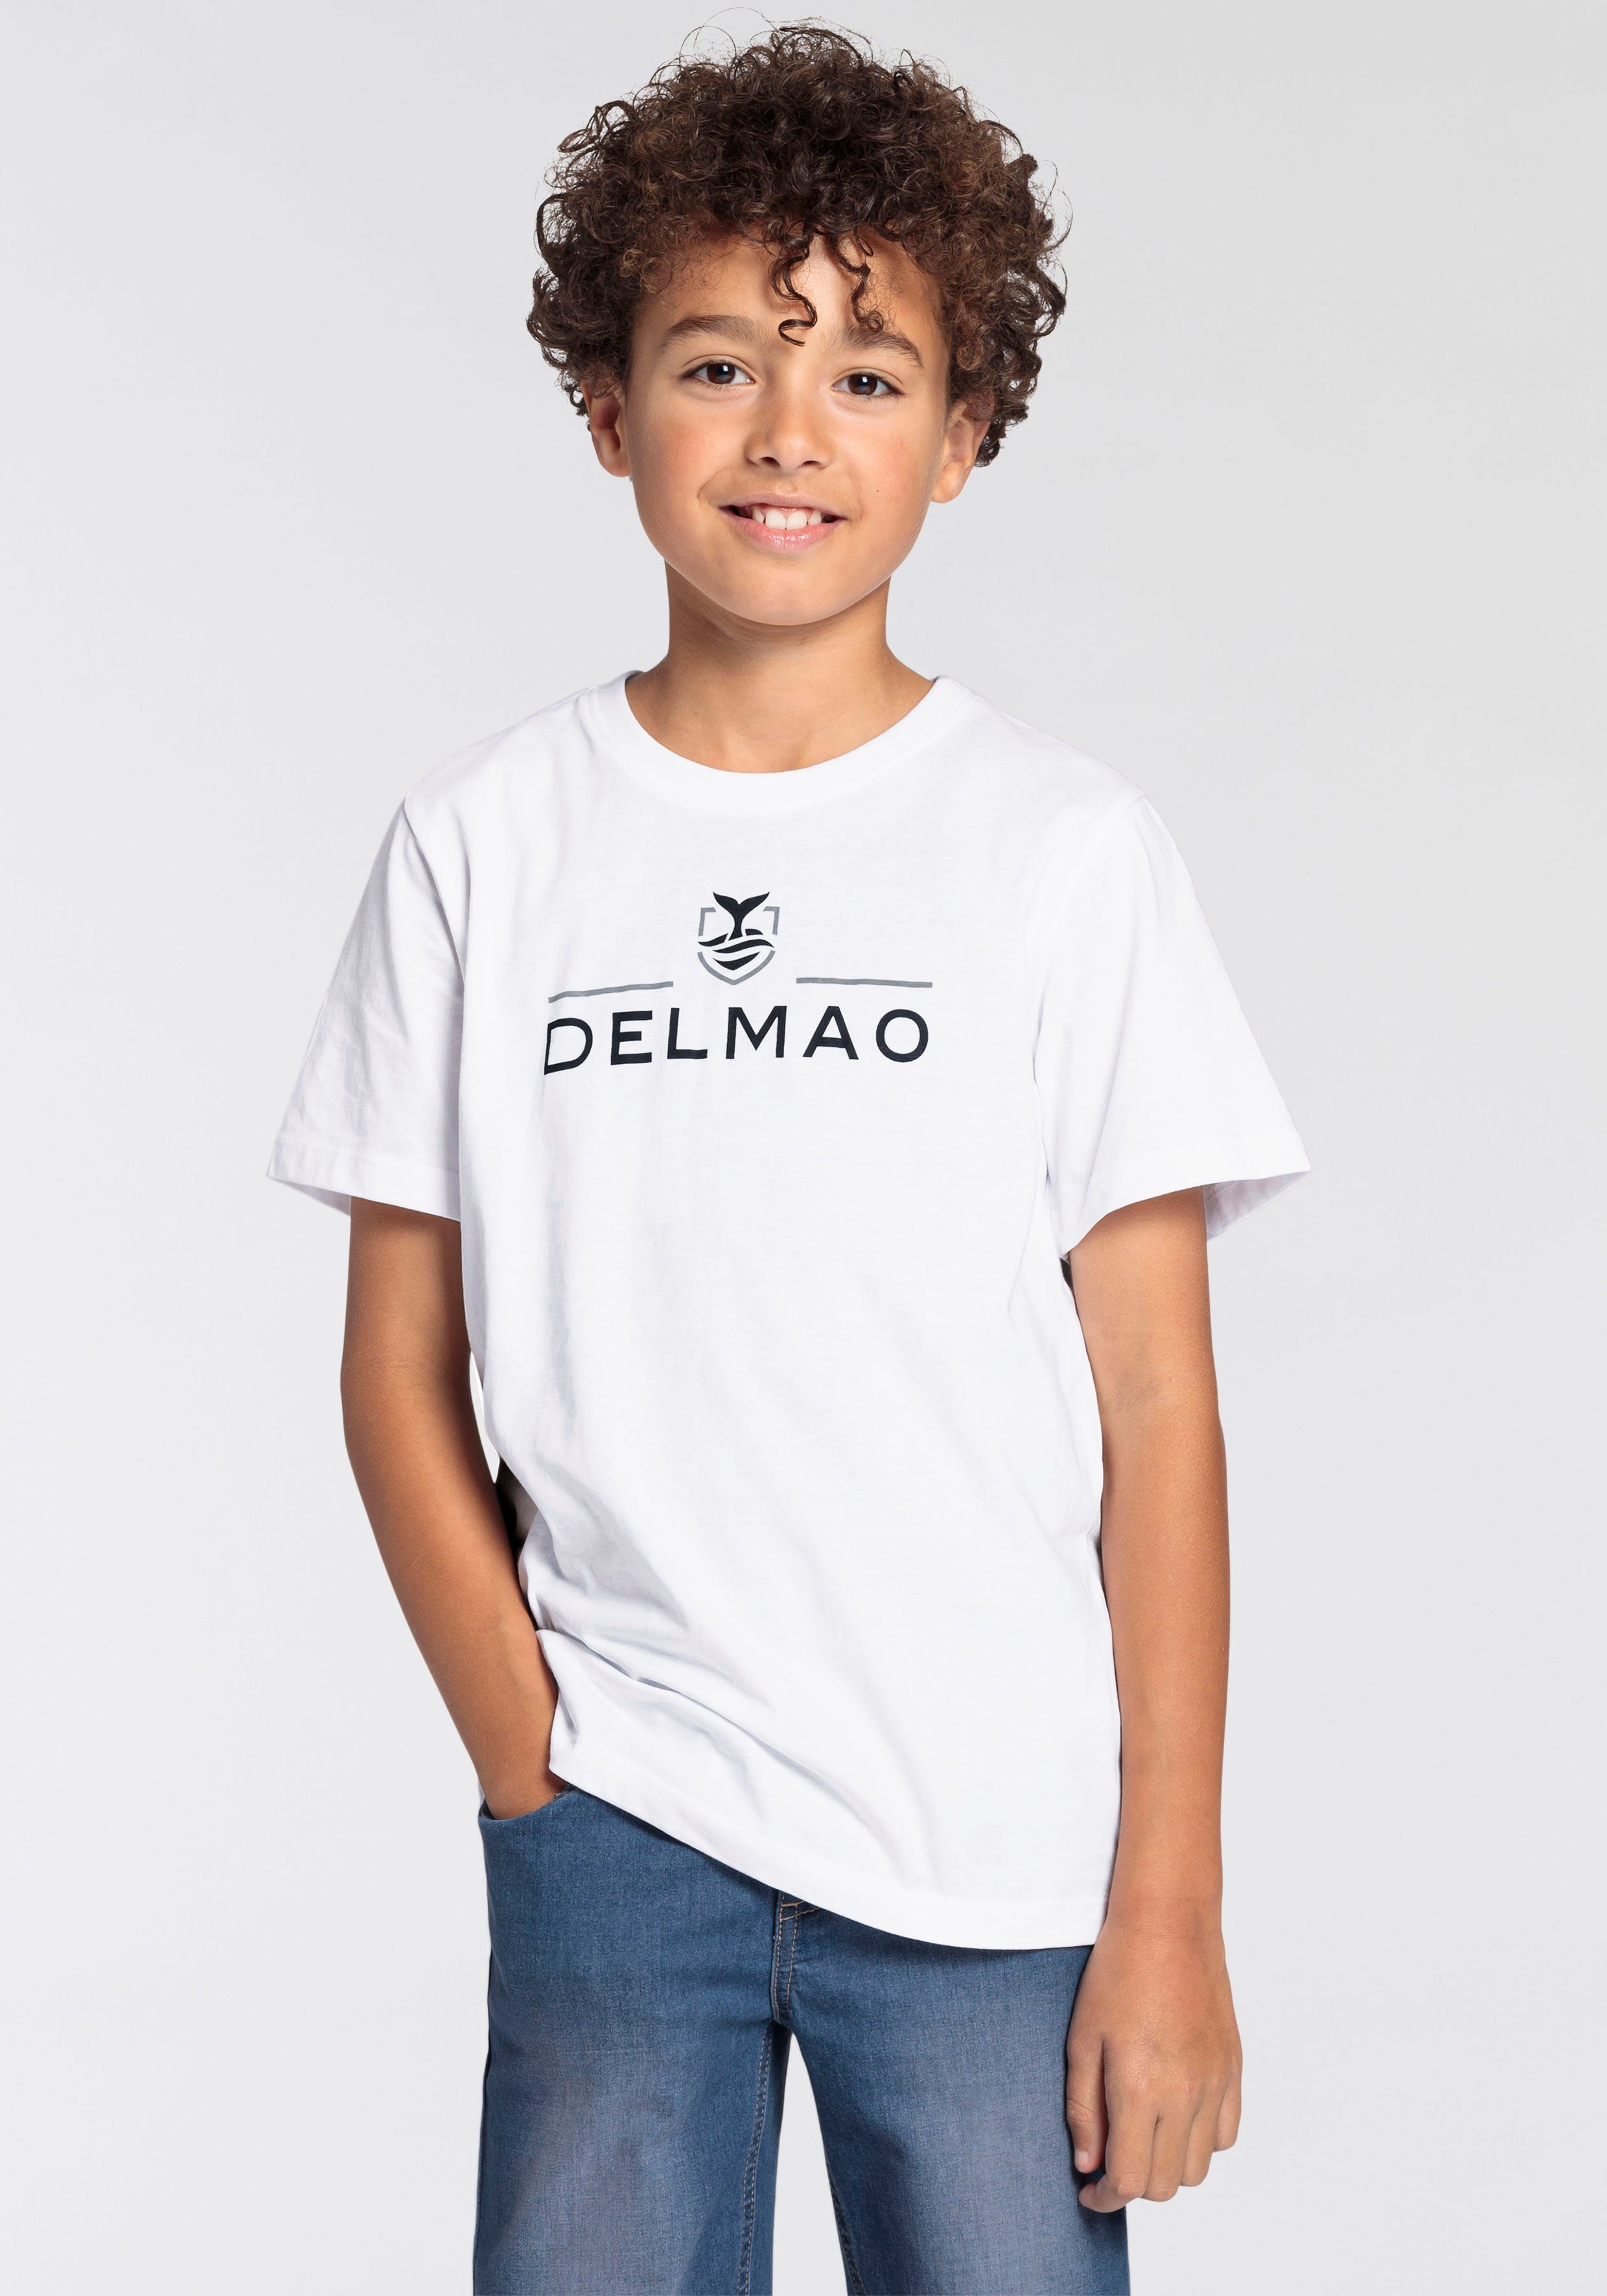 DELMAO T-Shirt für Jungen, mit Logo-Print. NEUE MARKE, T-Shirt von Delmao  für Jungen